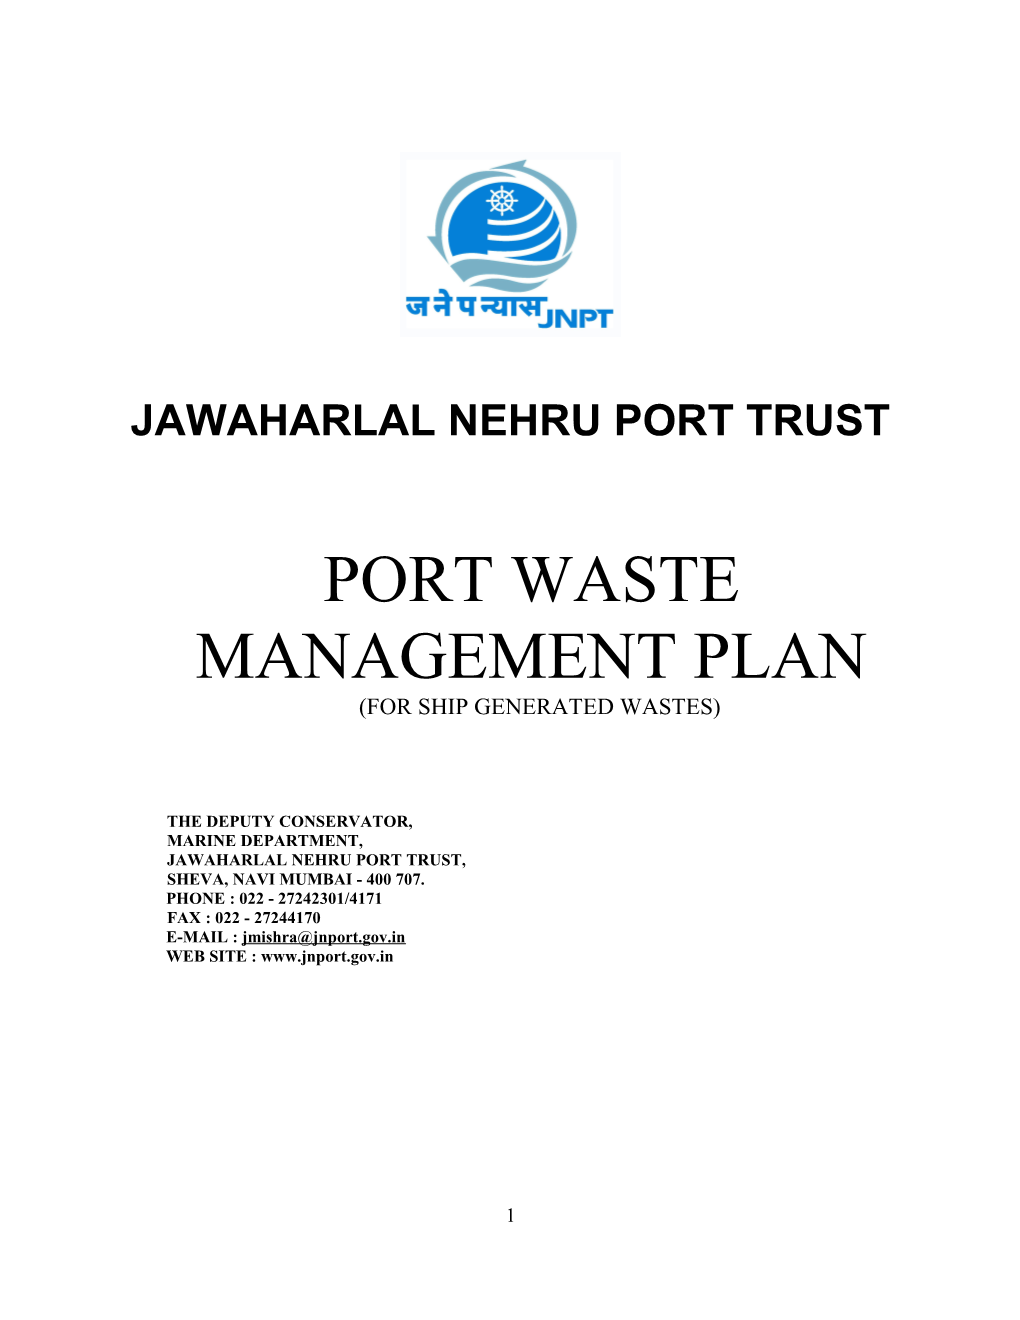 Jawaharlal Nehru Port Trust